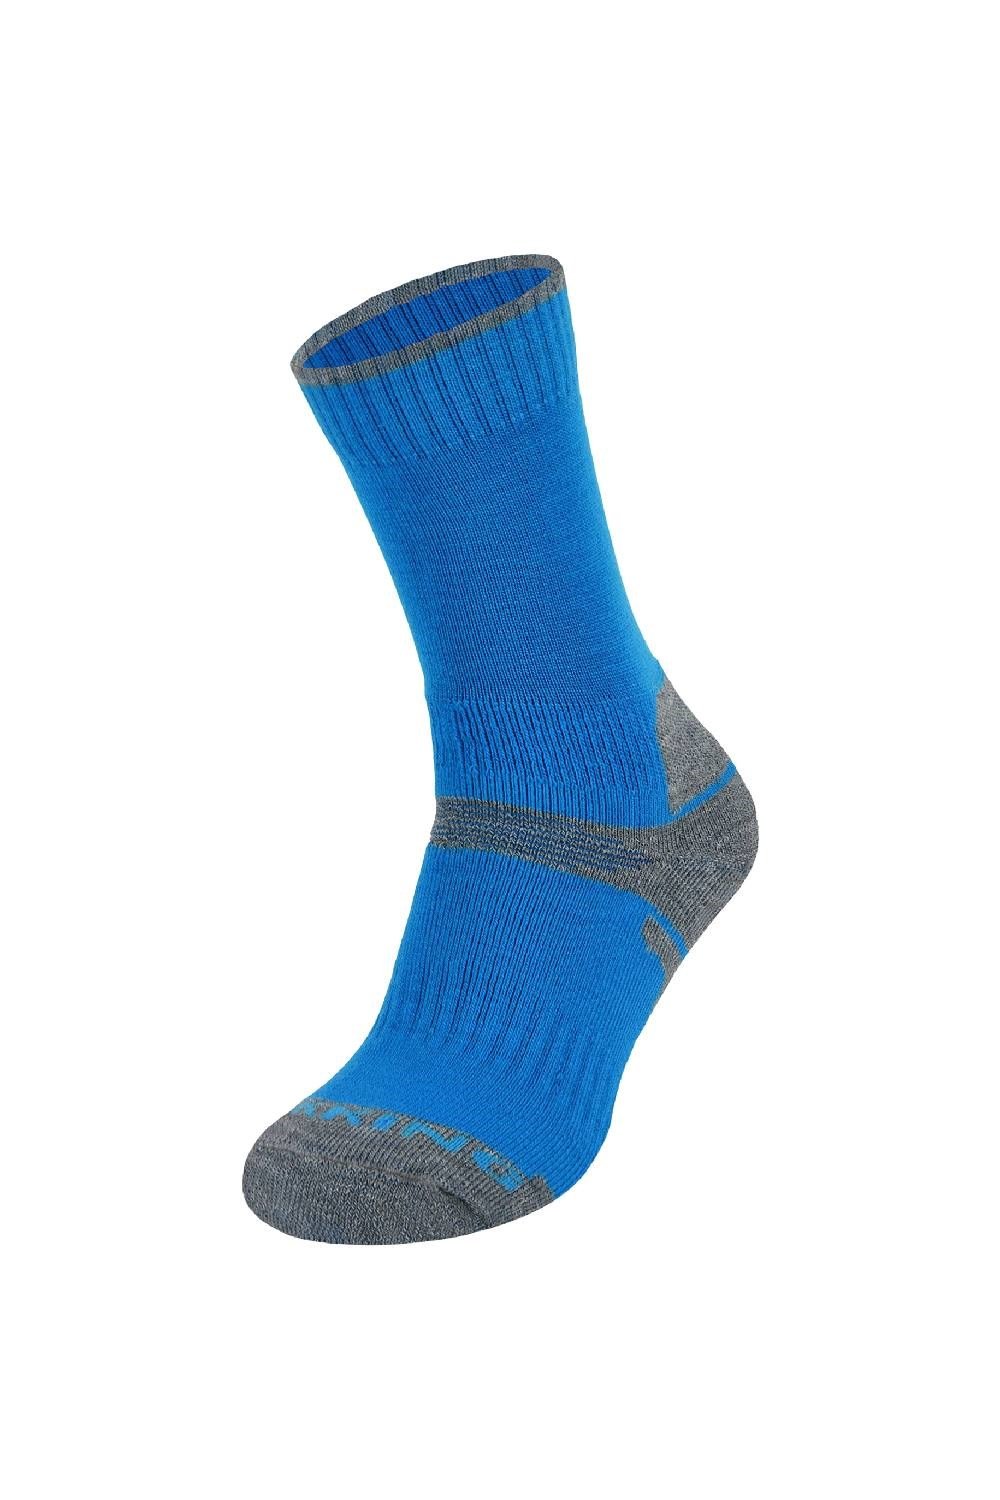 Kids Breathable Merino Wool Hiking Socks -